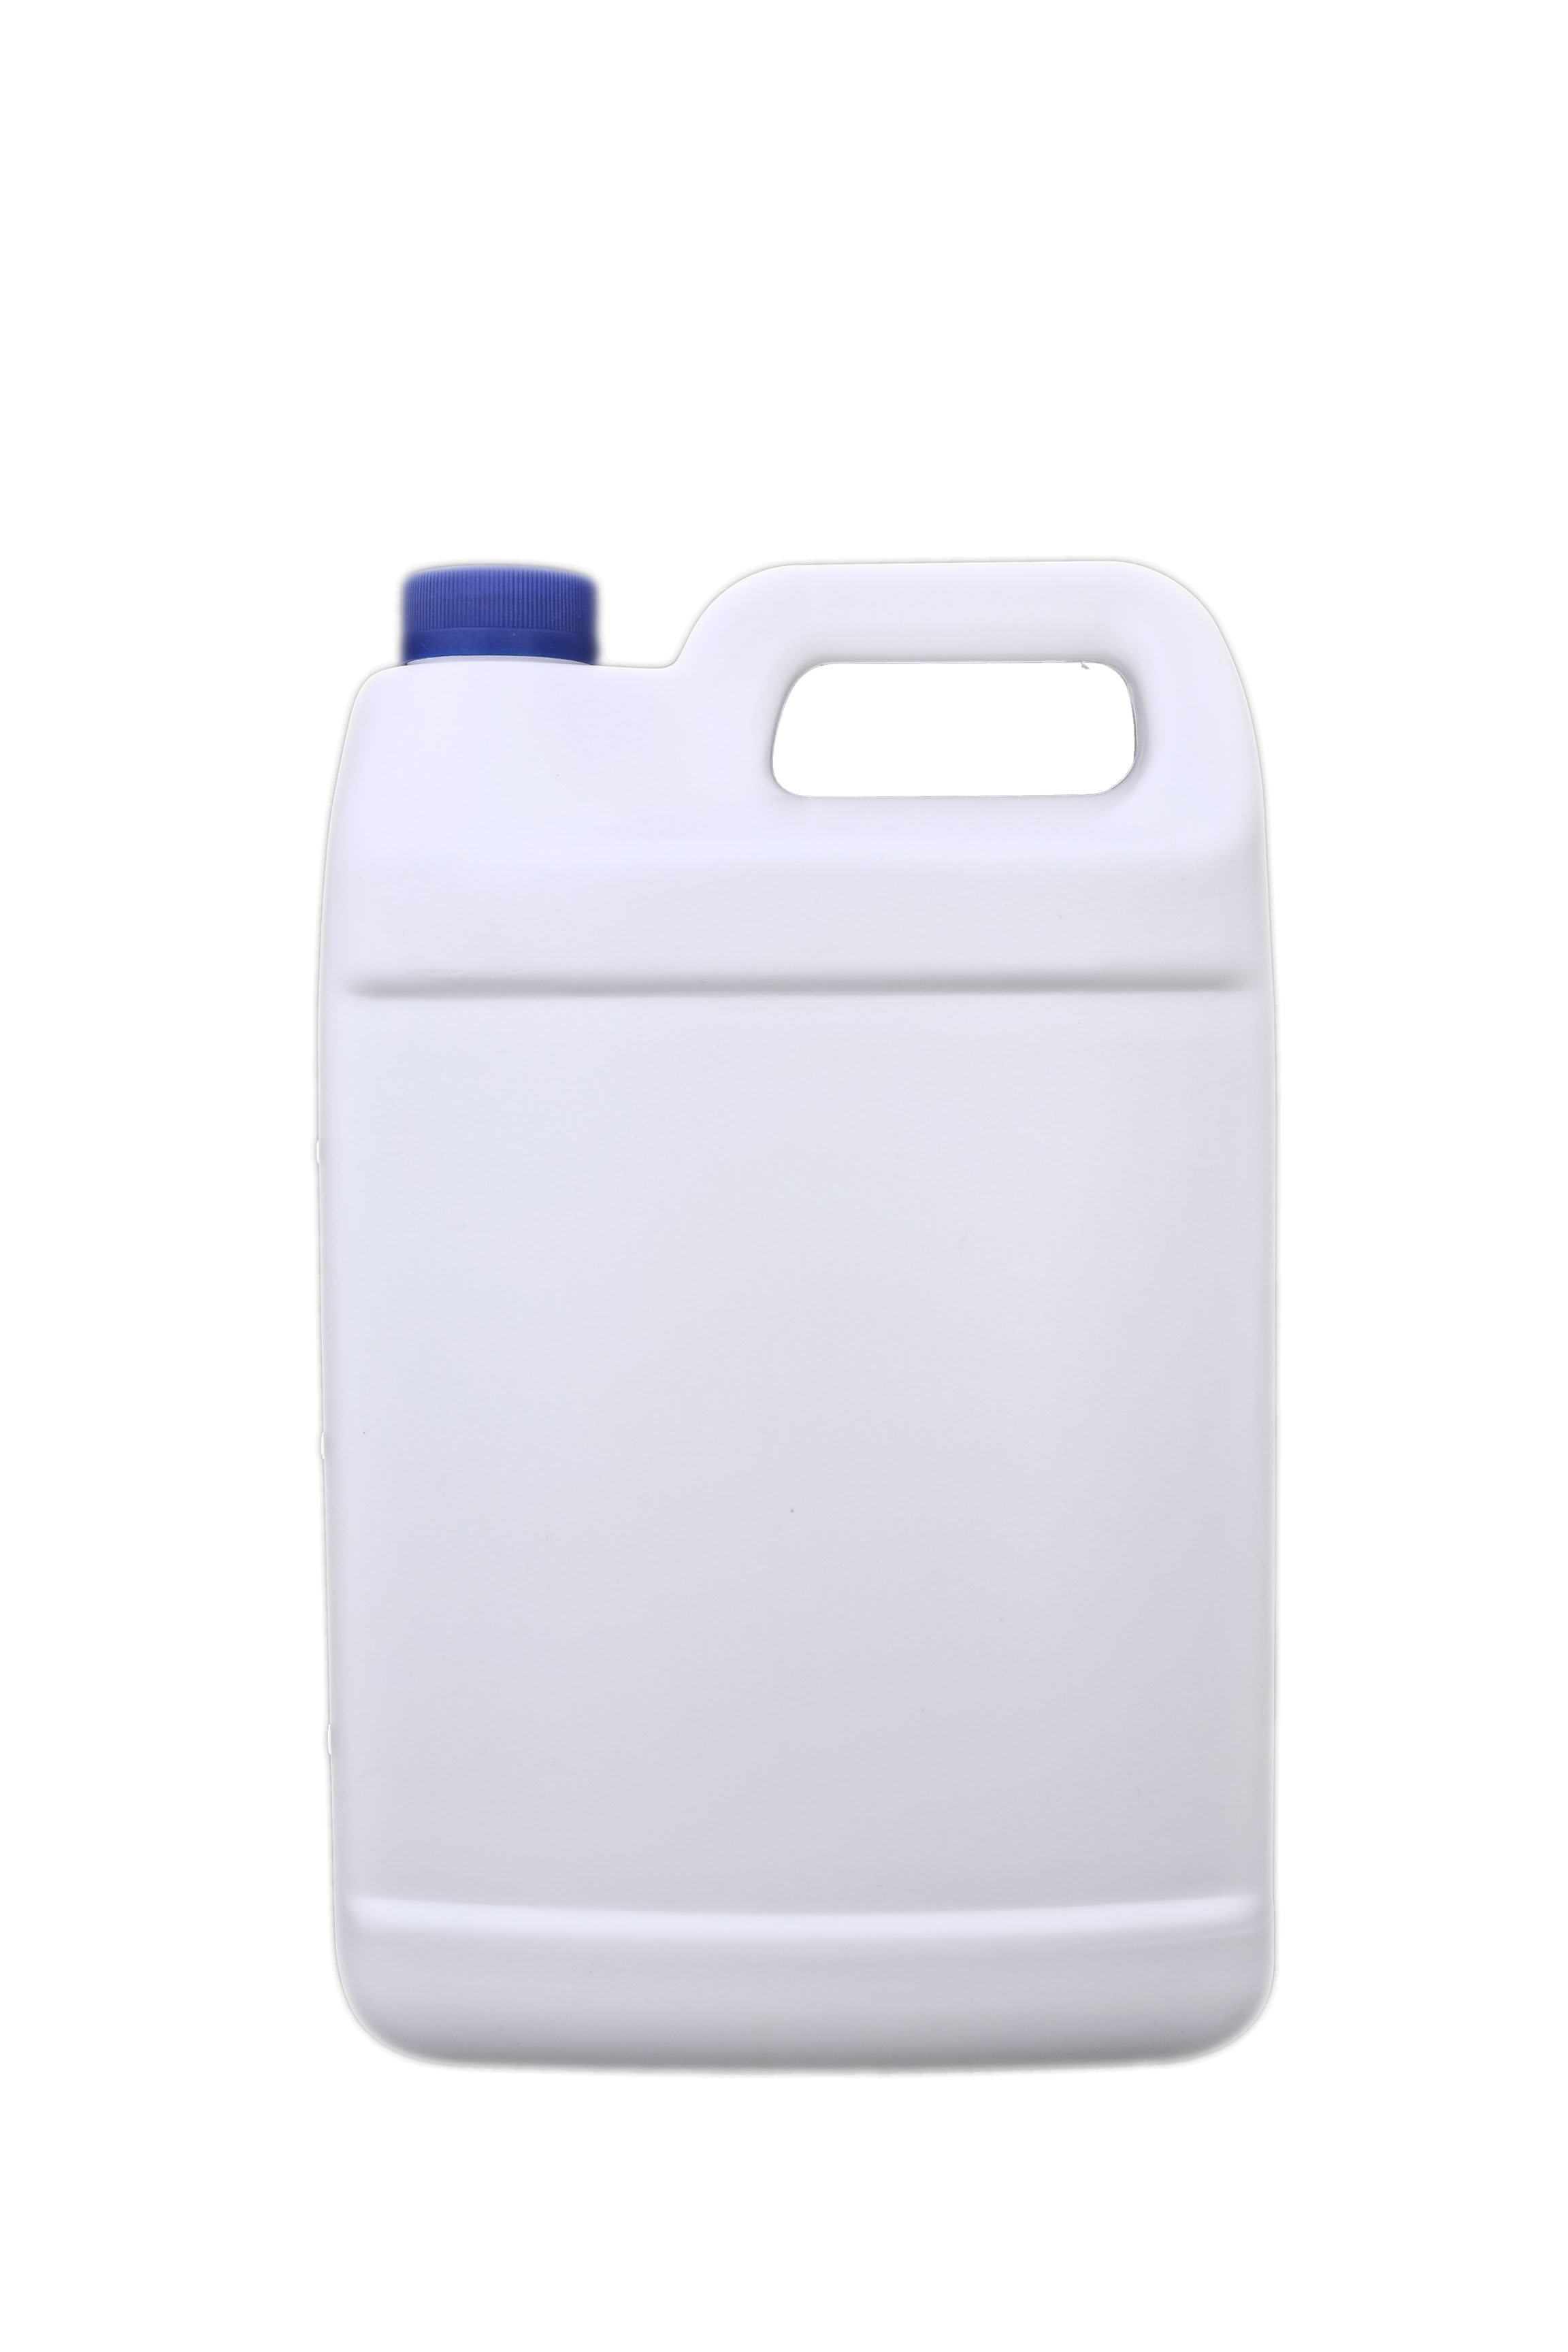 4L大容量手挽扁瓶高级清洁剂